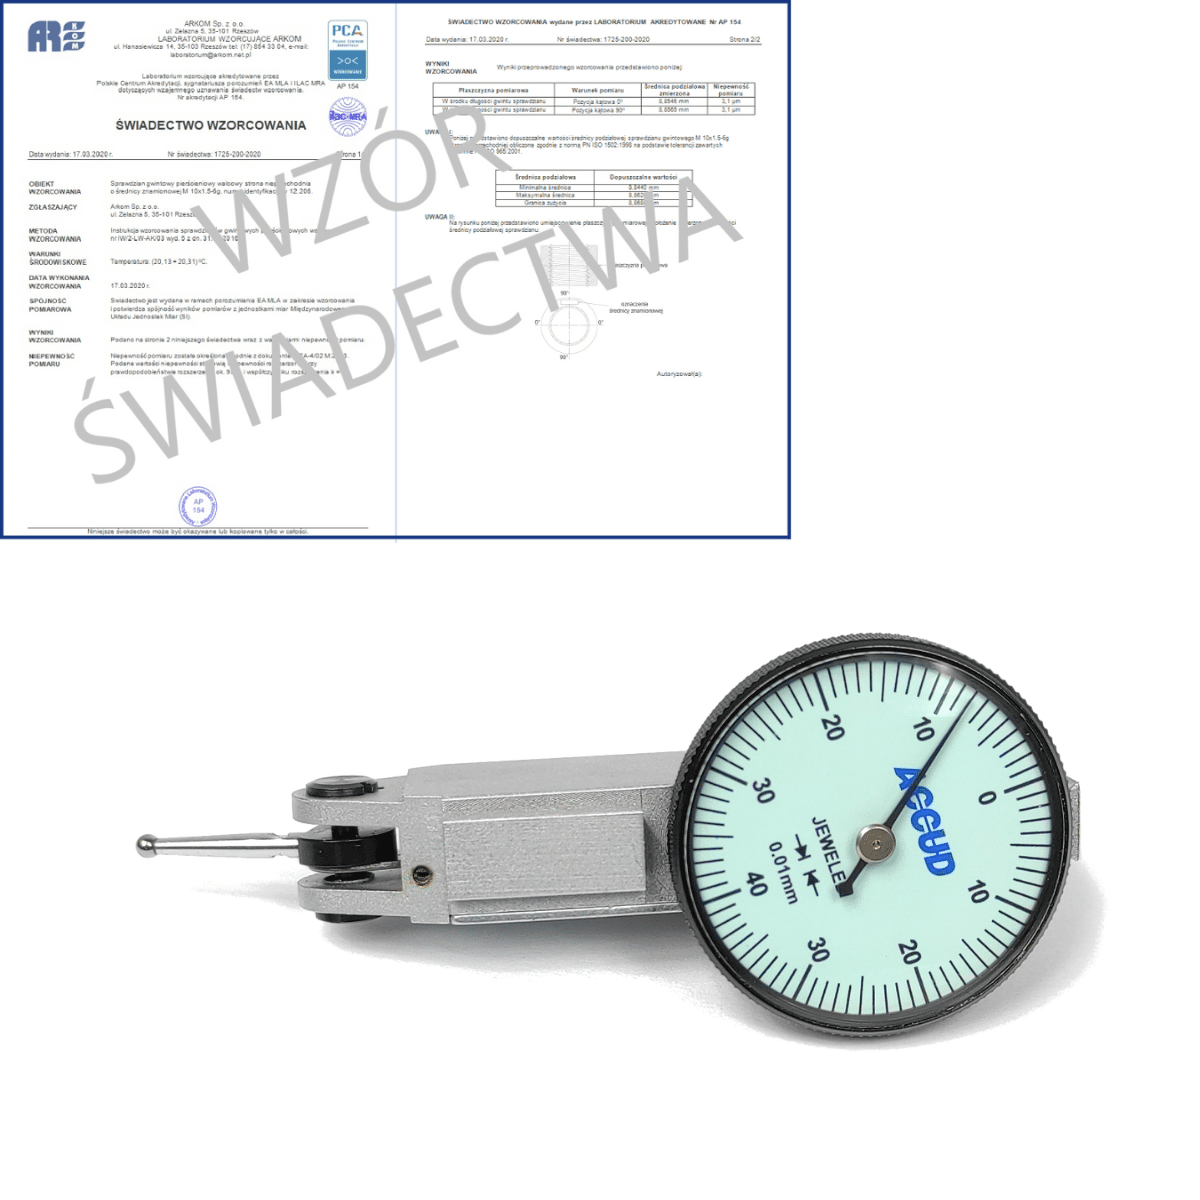 ACCUD czujnik dźwigniowo-zębaty poziomy 0-0.8/0.01 mm + świadectwo wzorcowania PCA 261-008-11 WZORC (Zdjęcie 1)